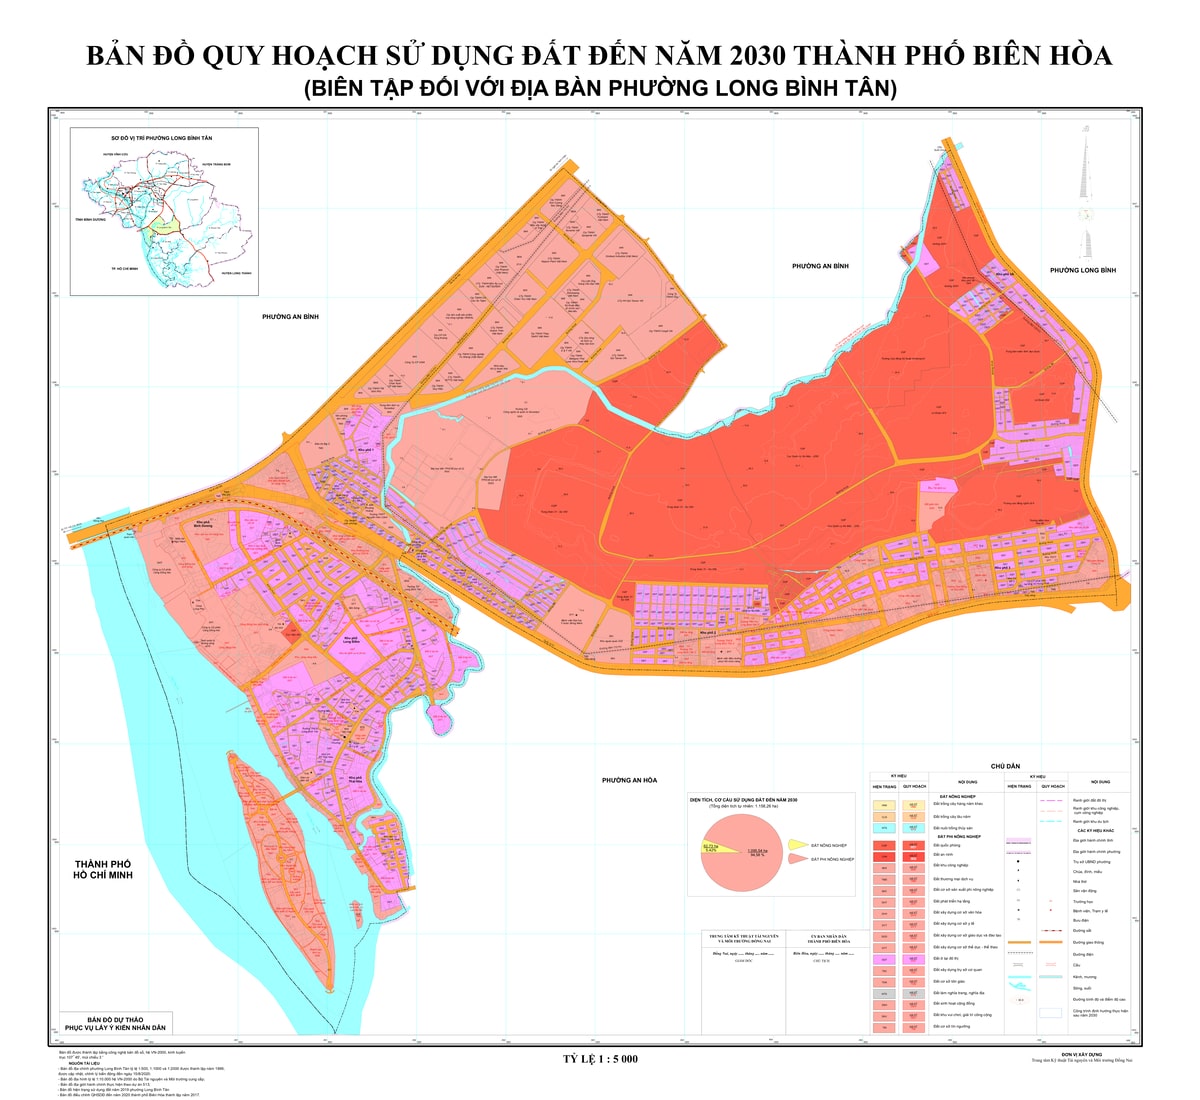 Bản đồ quy hoạch phường Long Bình Tân, thành phố Biên Hòa, tỉnh Đồng Nai đến năm 2030